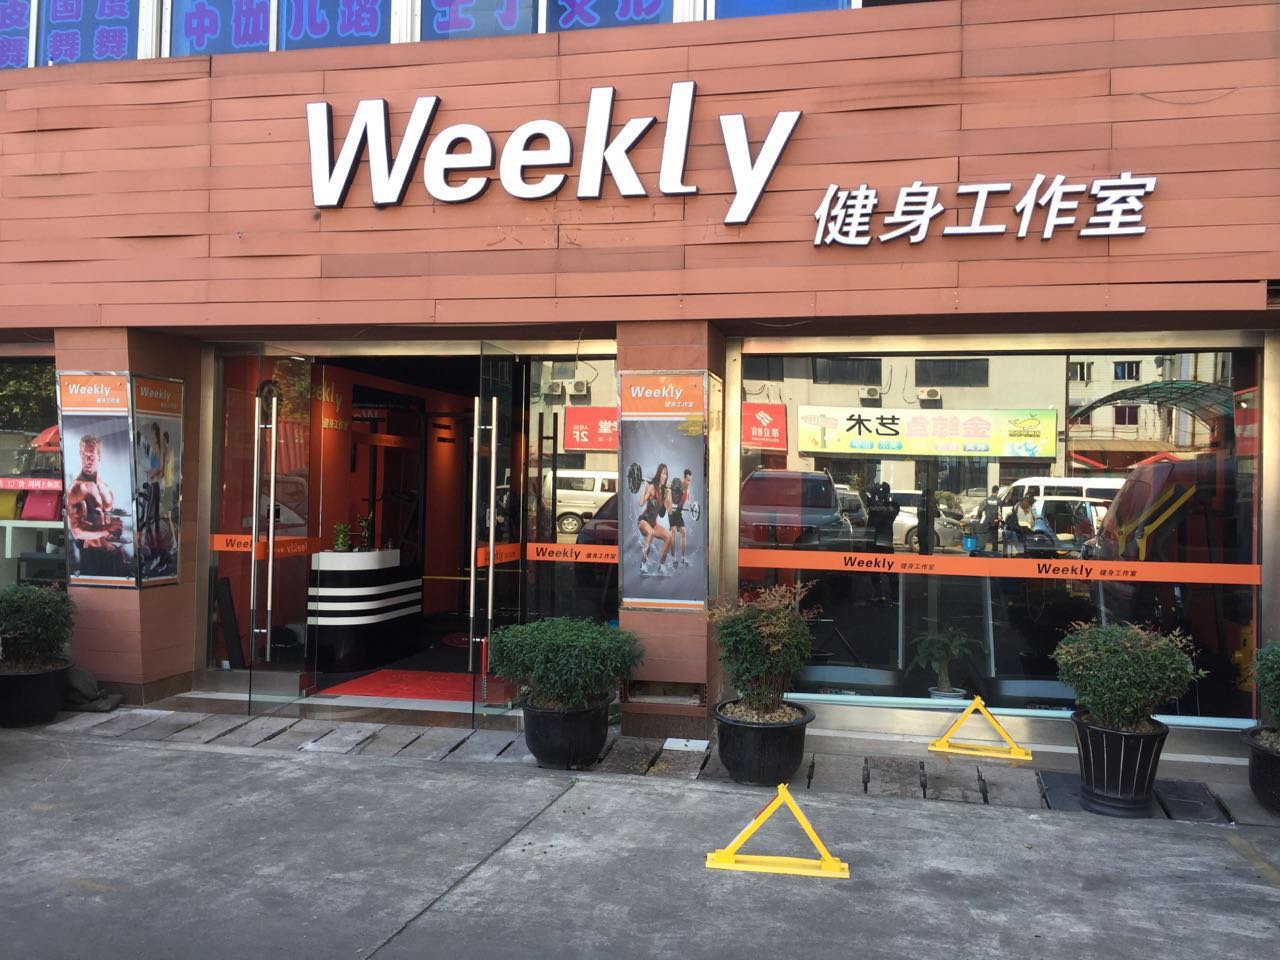 上海上海Weekly健身工作室预订